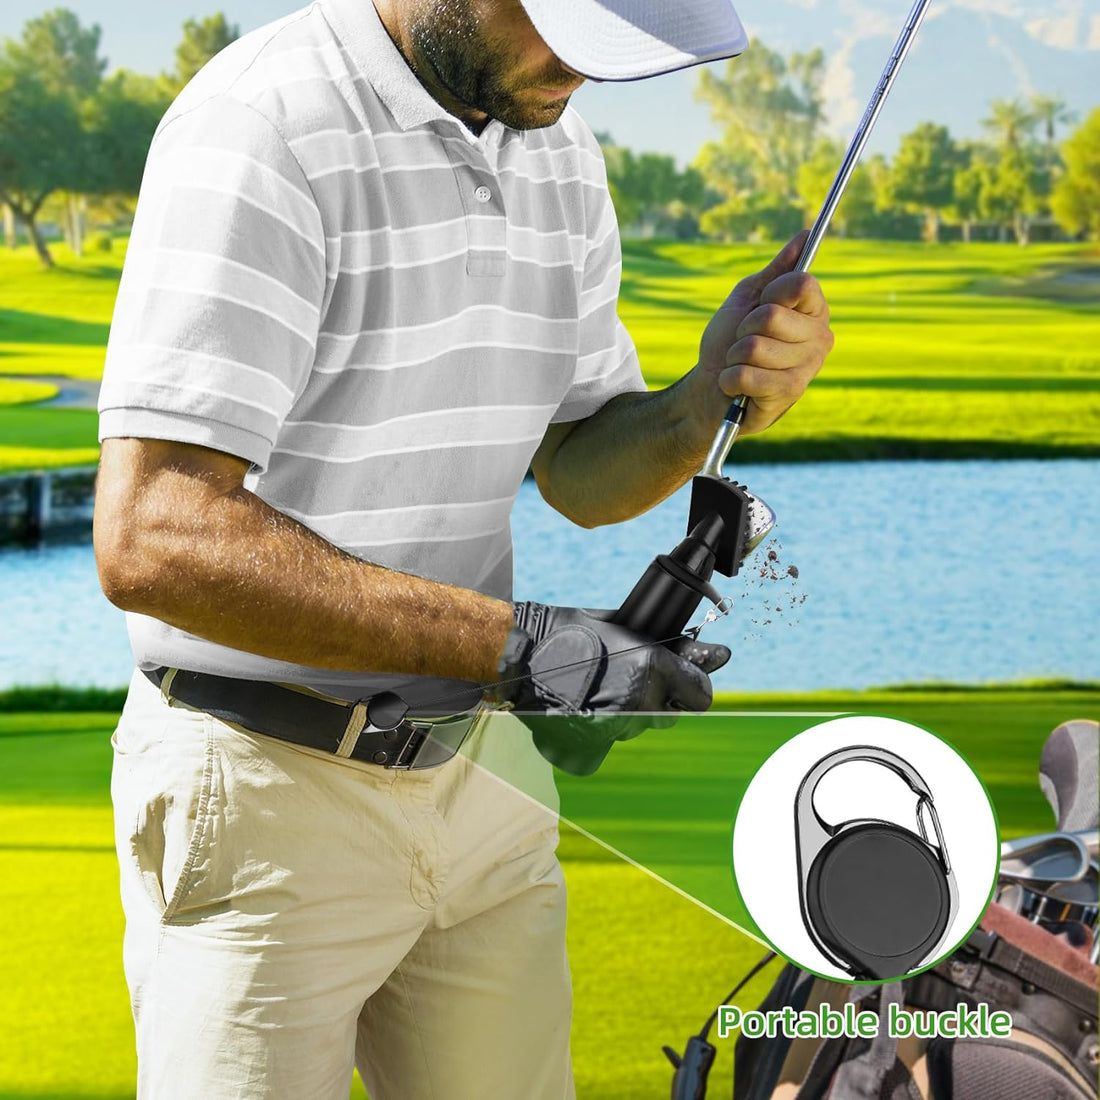 Ftabernam Golf Club Brush Cleaner, Splash Golf Water Brush, Best Golf Gifts for Men